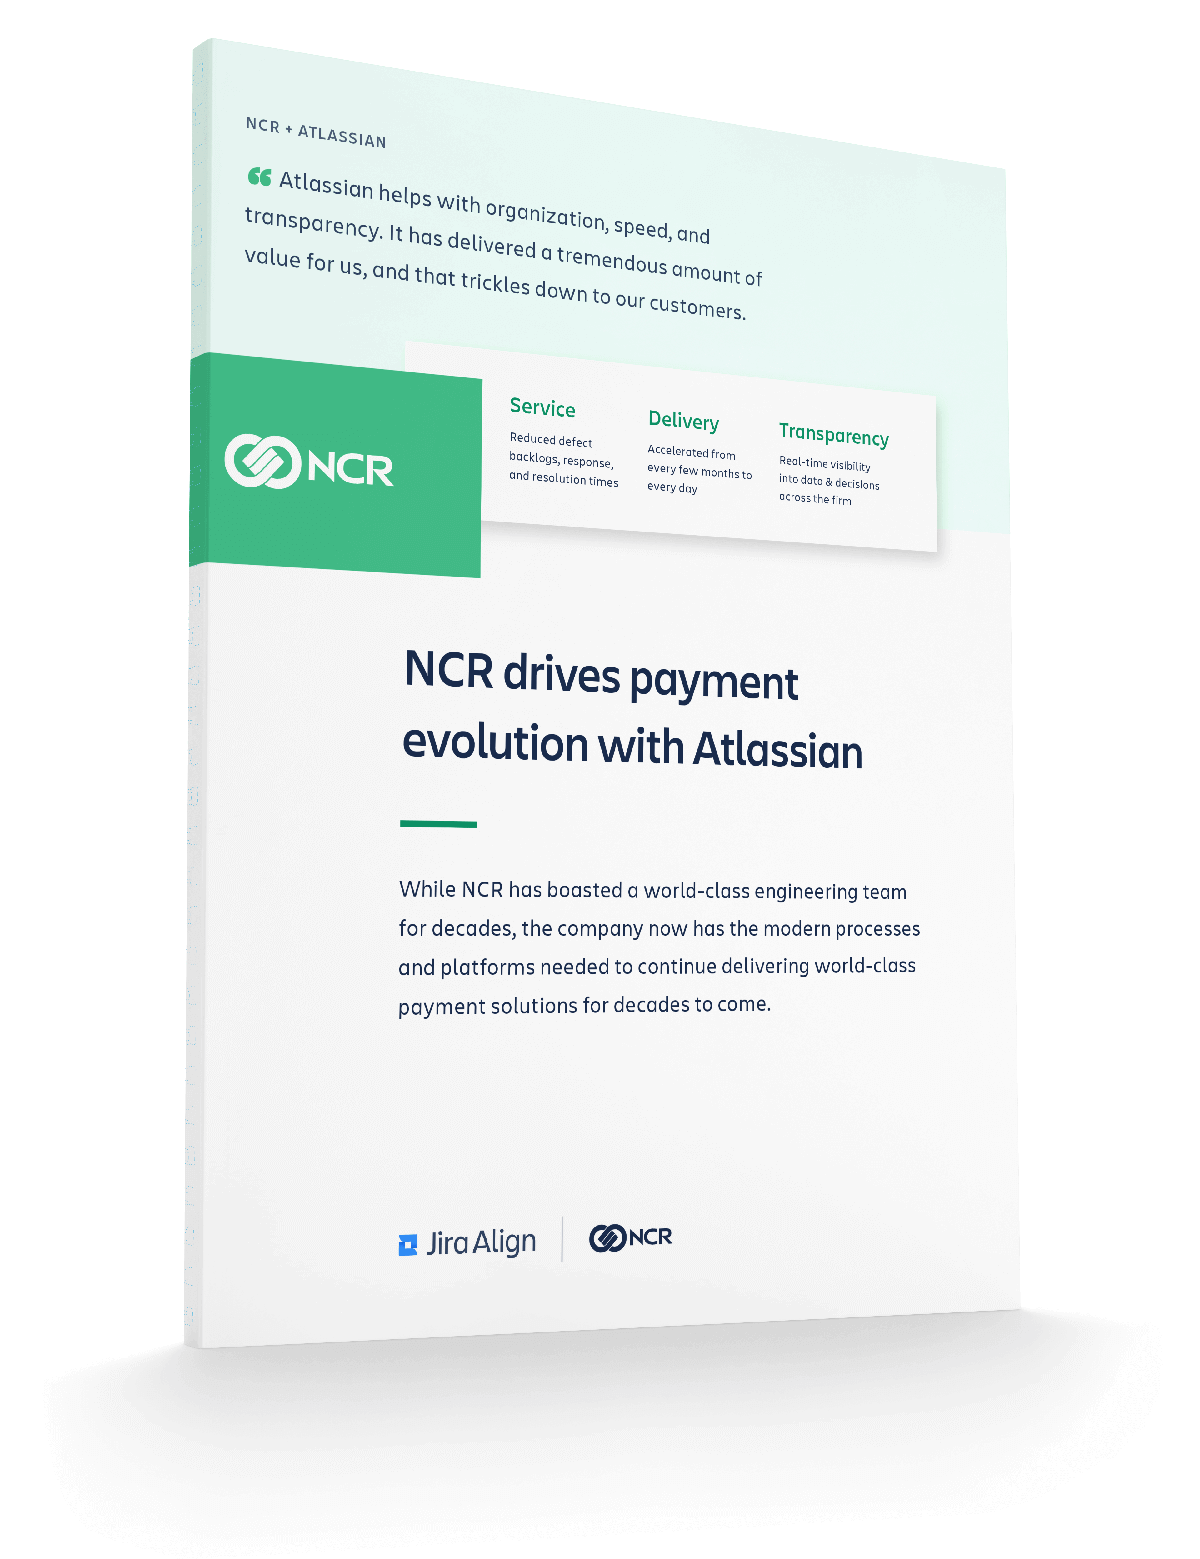 Vista previa del PDF NCR transforma los pagos con prácticas ágiles escaladas y un conjunto de herramientas de Atlassian integrado